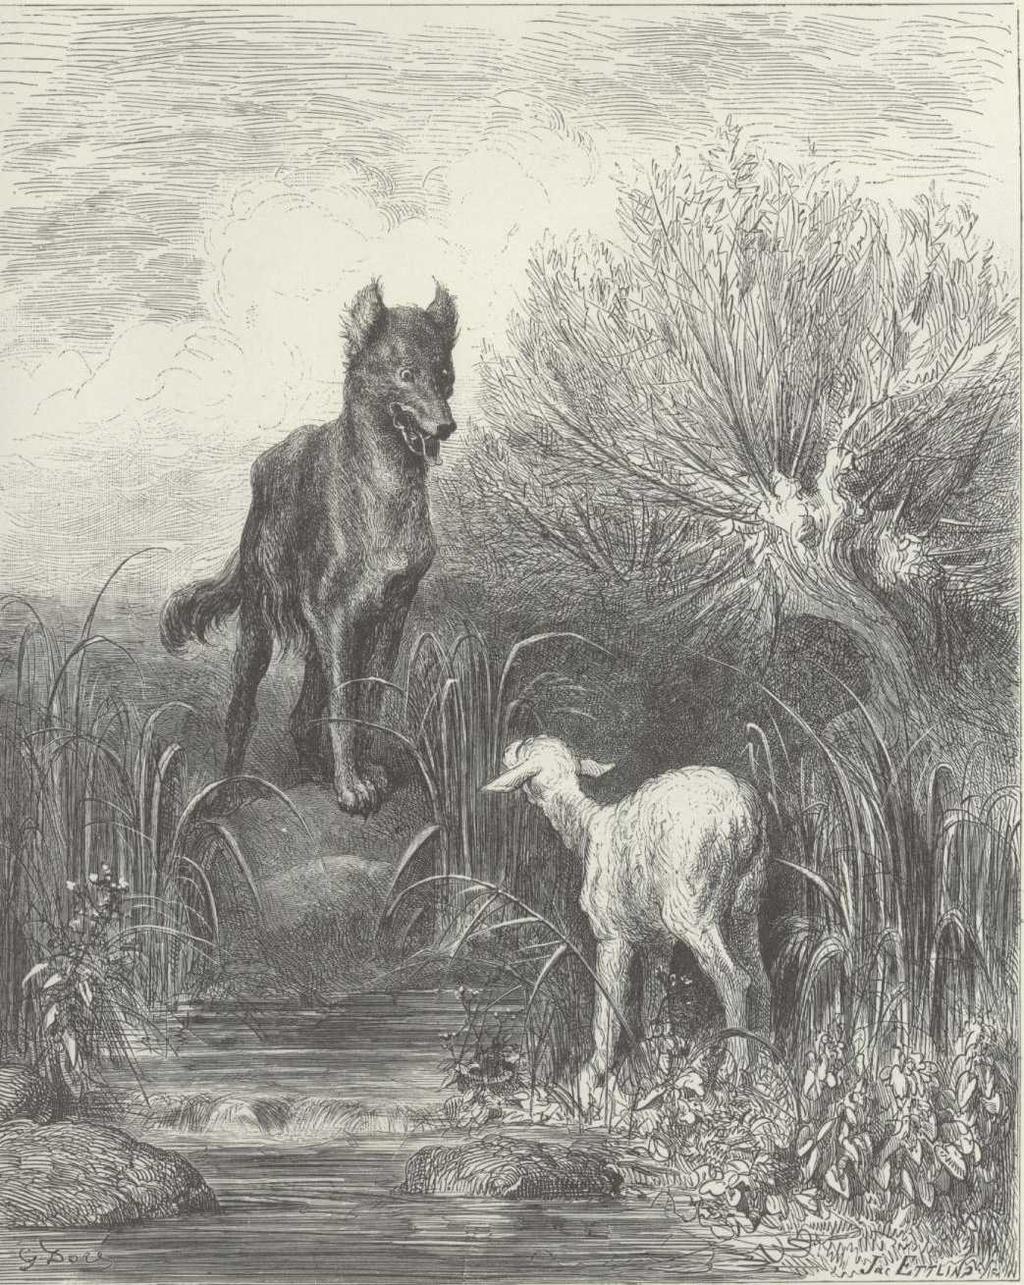 Kål på floden af Troels Ken Pedersen Kim skal bringe en ulv, et får og et kålhoved med hjem til mor og far, og der er en flod i vejen.